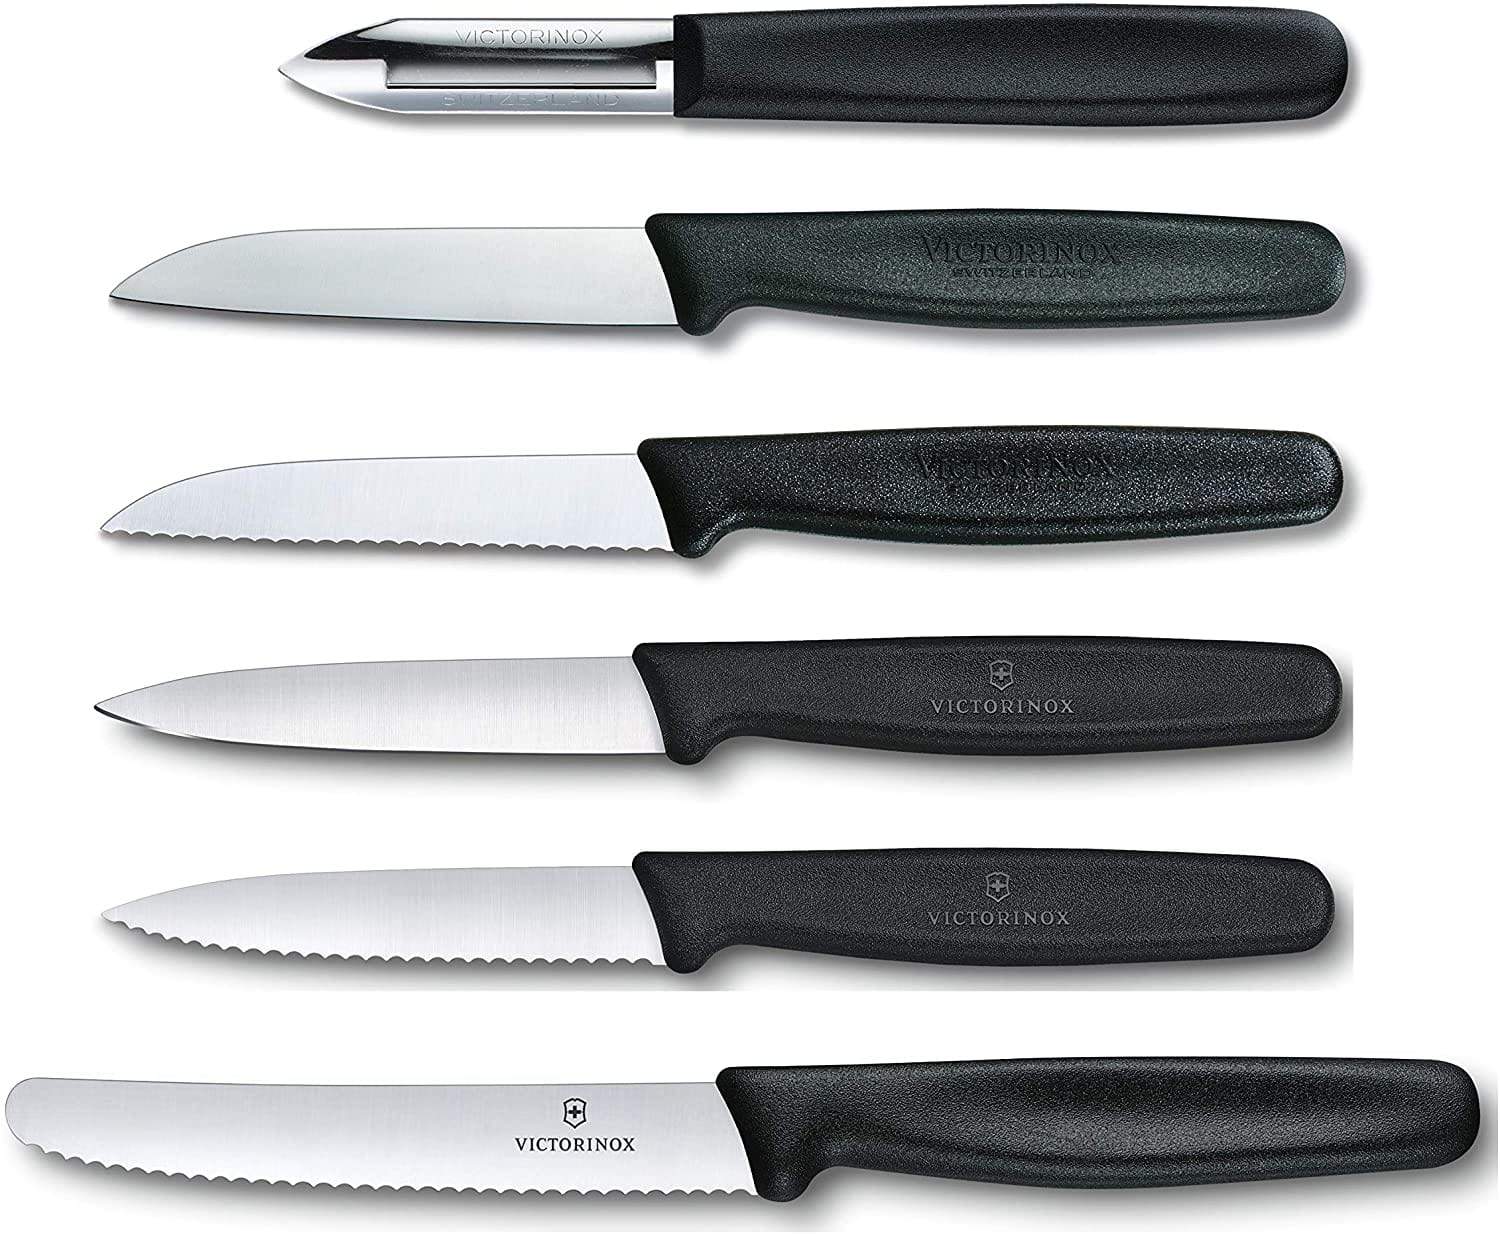 فيكتورينوكس – طقم سكين بارينج 6 قطع – أسود - 5.1113.6